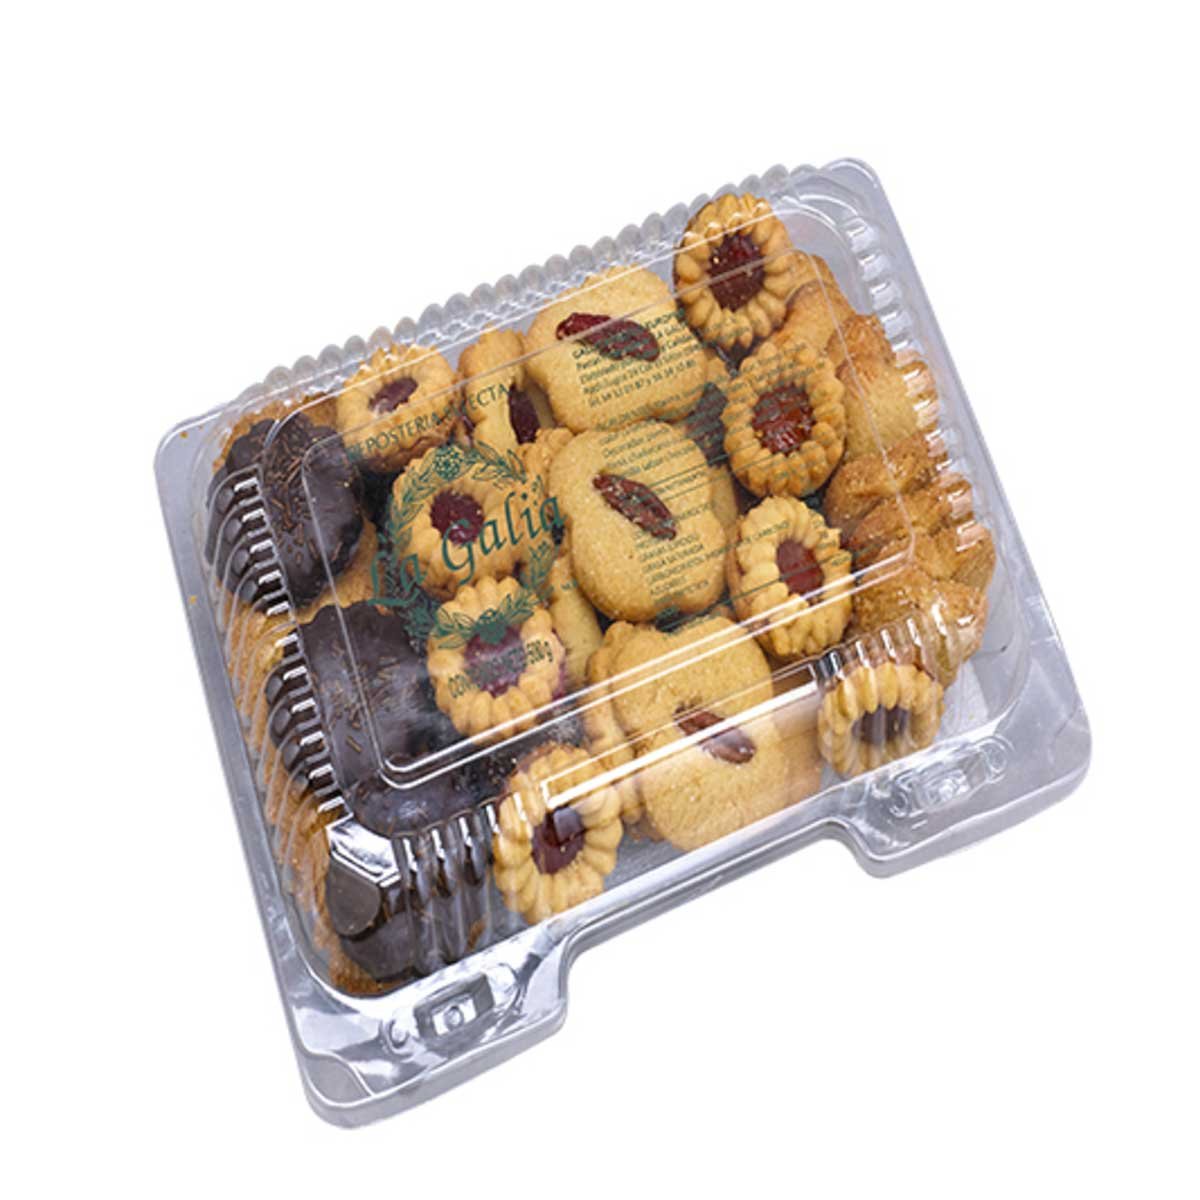 Surtido de galletas Galleteca caja 500 g - Supermercados DIA